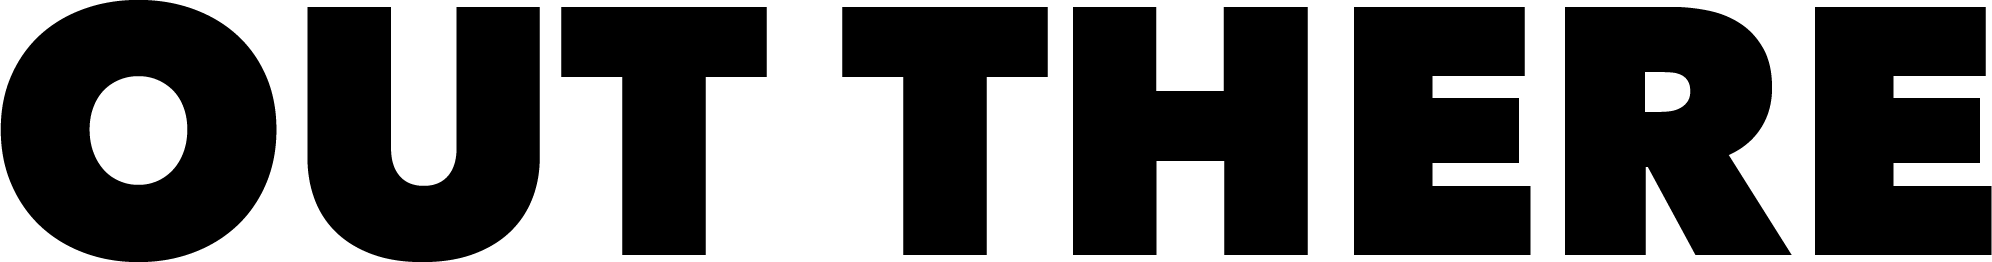 En grafisk filmaffisch som visar en vit siluett av en människofigur mot röd bakgrund. Figurens huvud öppnas som en klaffbräda. Ränderna på klaffbrädan är målade i uppmärksamhetsfärger. Inne i huvudet växer skog.